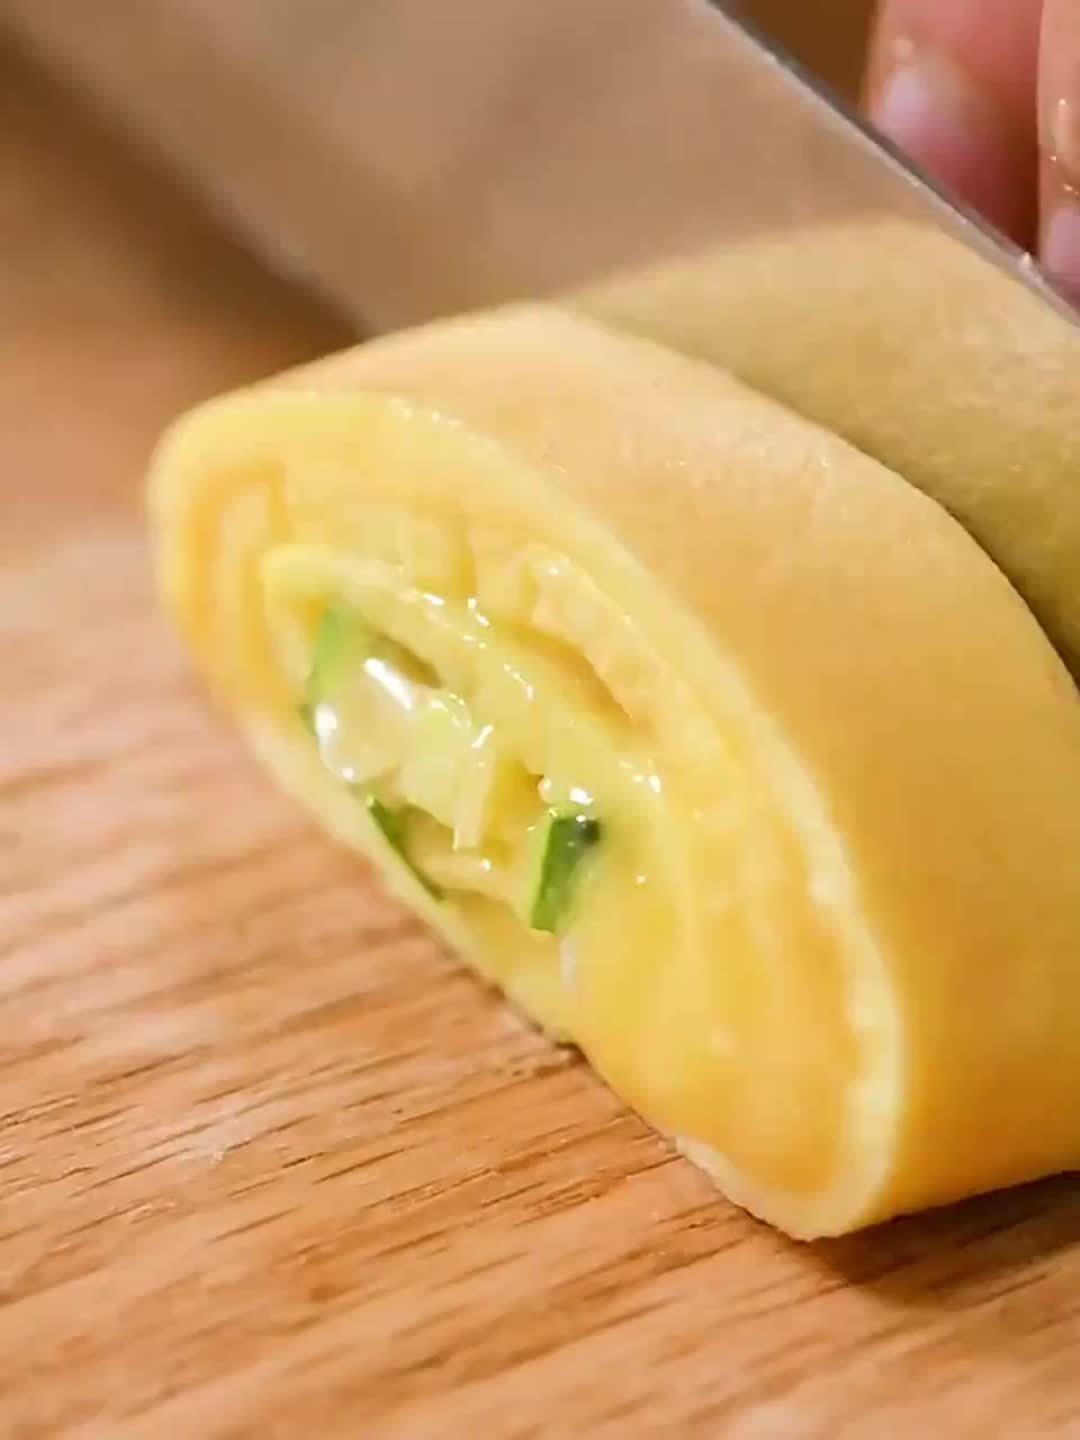 Tamagoyaki Japanese Omelette Pan/Egg Pan - Medium, 1 unit - Kroger